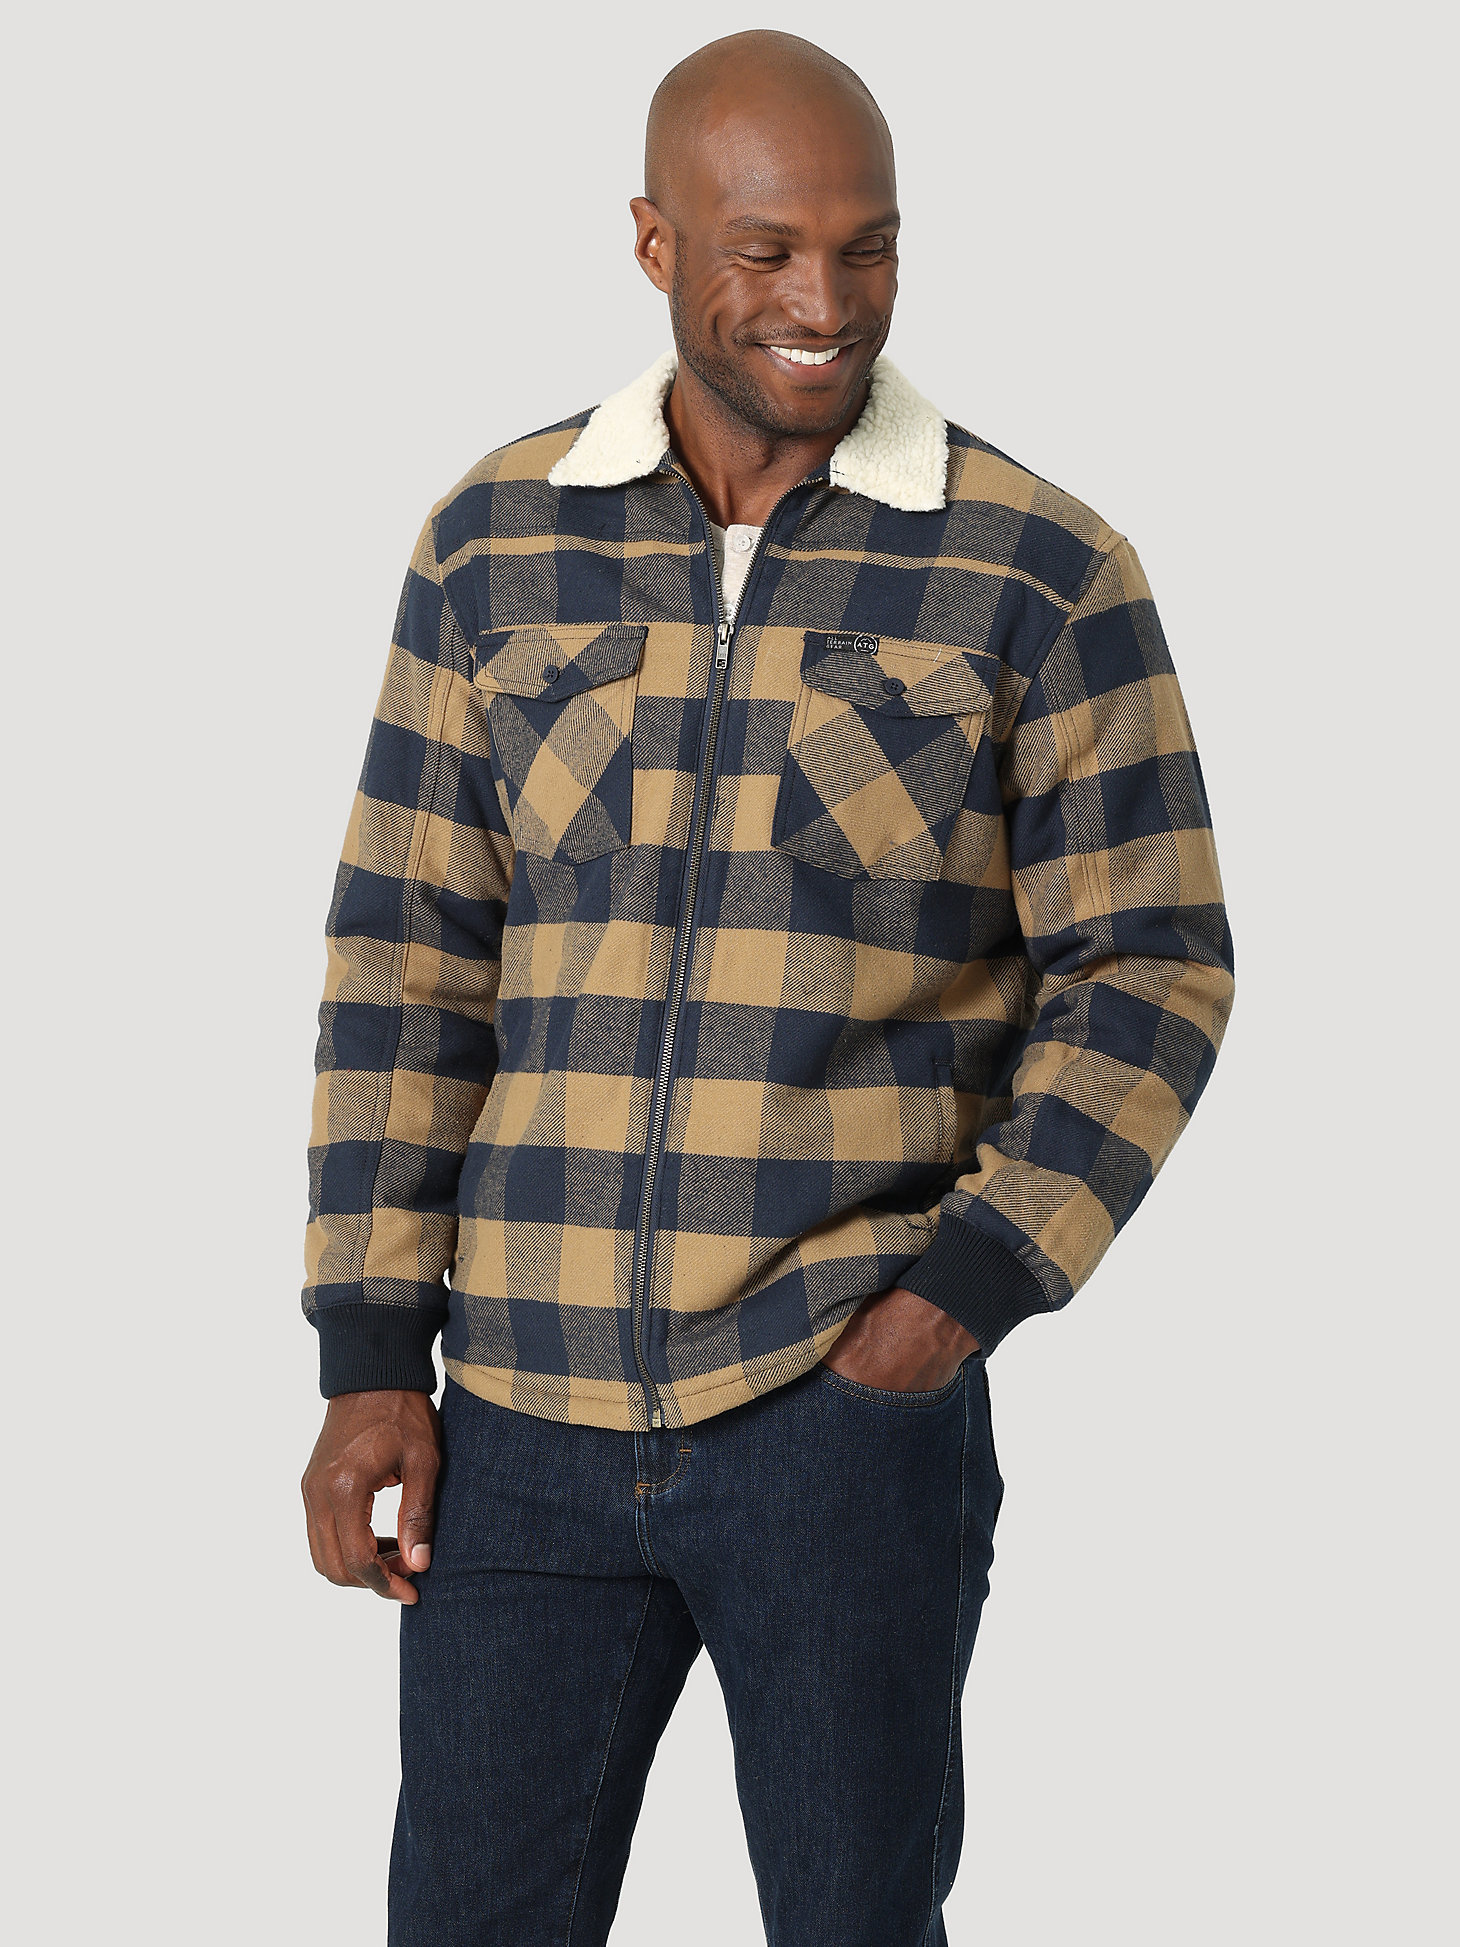 Voorrecht Tegenwerken beneden ATG by Wrangler™ Men's Sherpa Lined Flannel Shirt Jacket | The Monarch Look  | Wrangler®